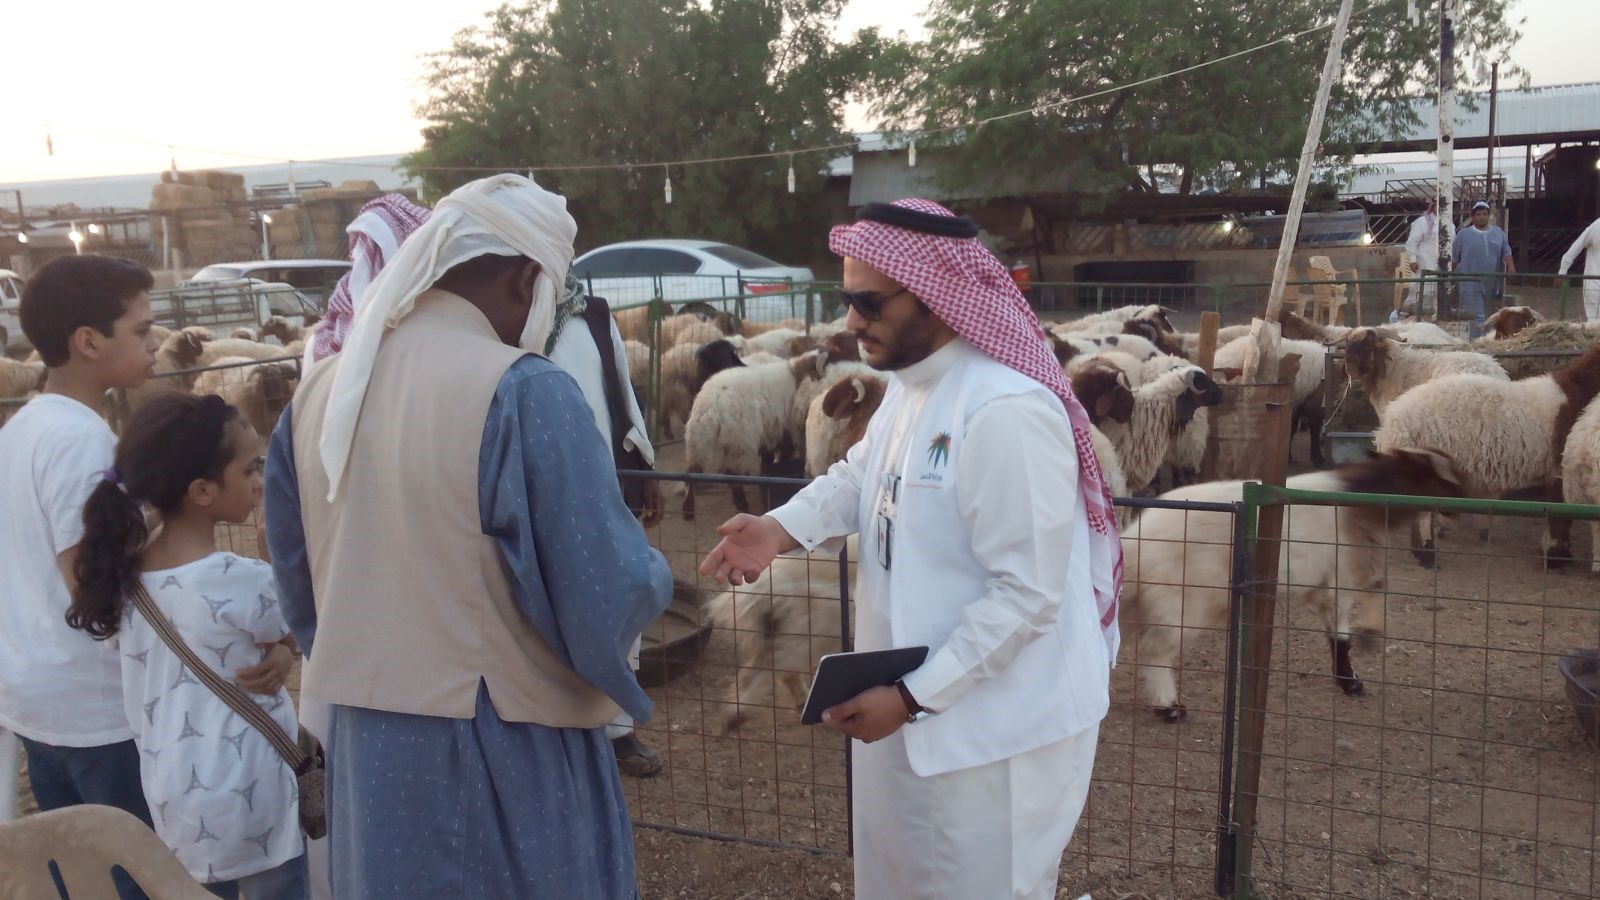 جولات تفتيشية لتعقّب مخالفي الإقامة ونظام العمل في أسواق ماشية #الرياض